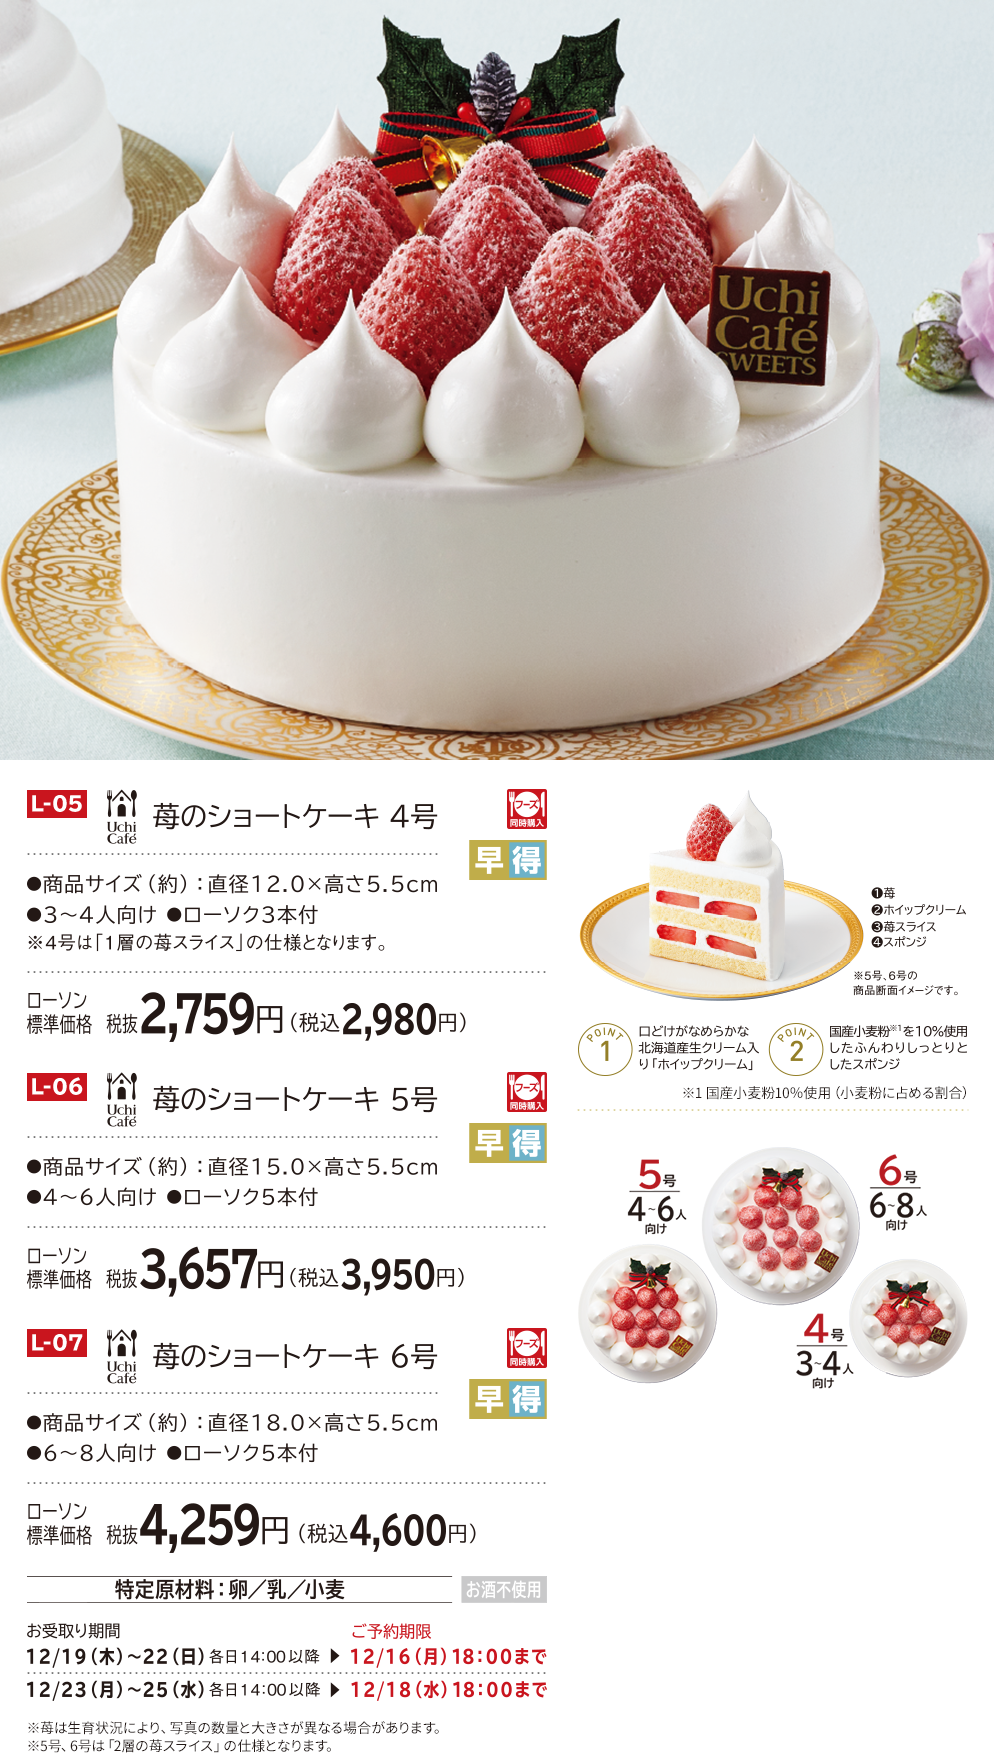 鍔 父方の 翻訳する ケーキ 5 号 値段 Ryosen Jp